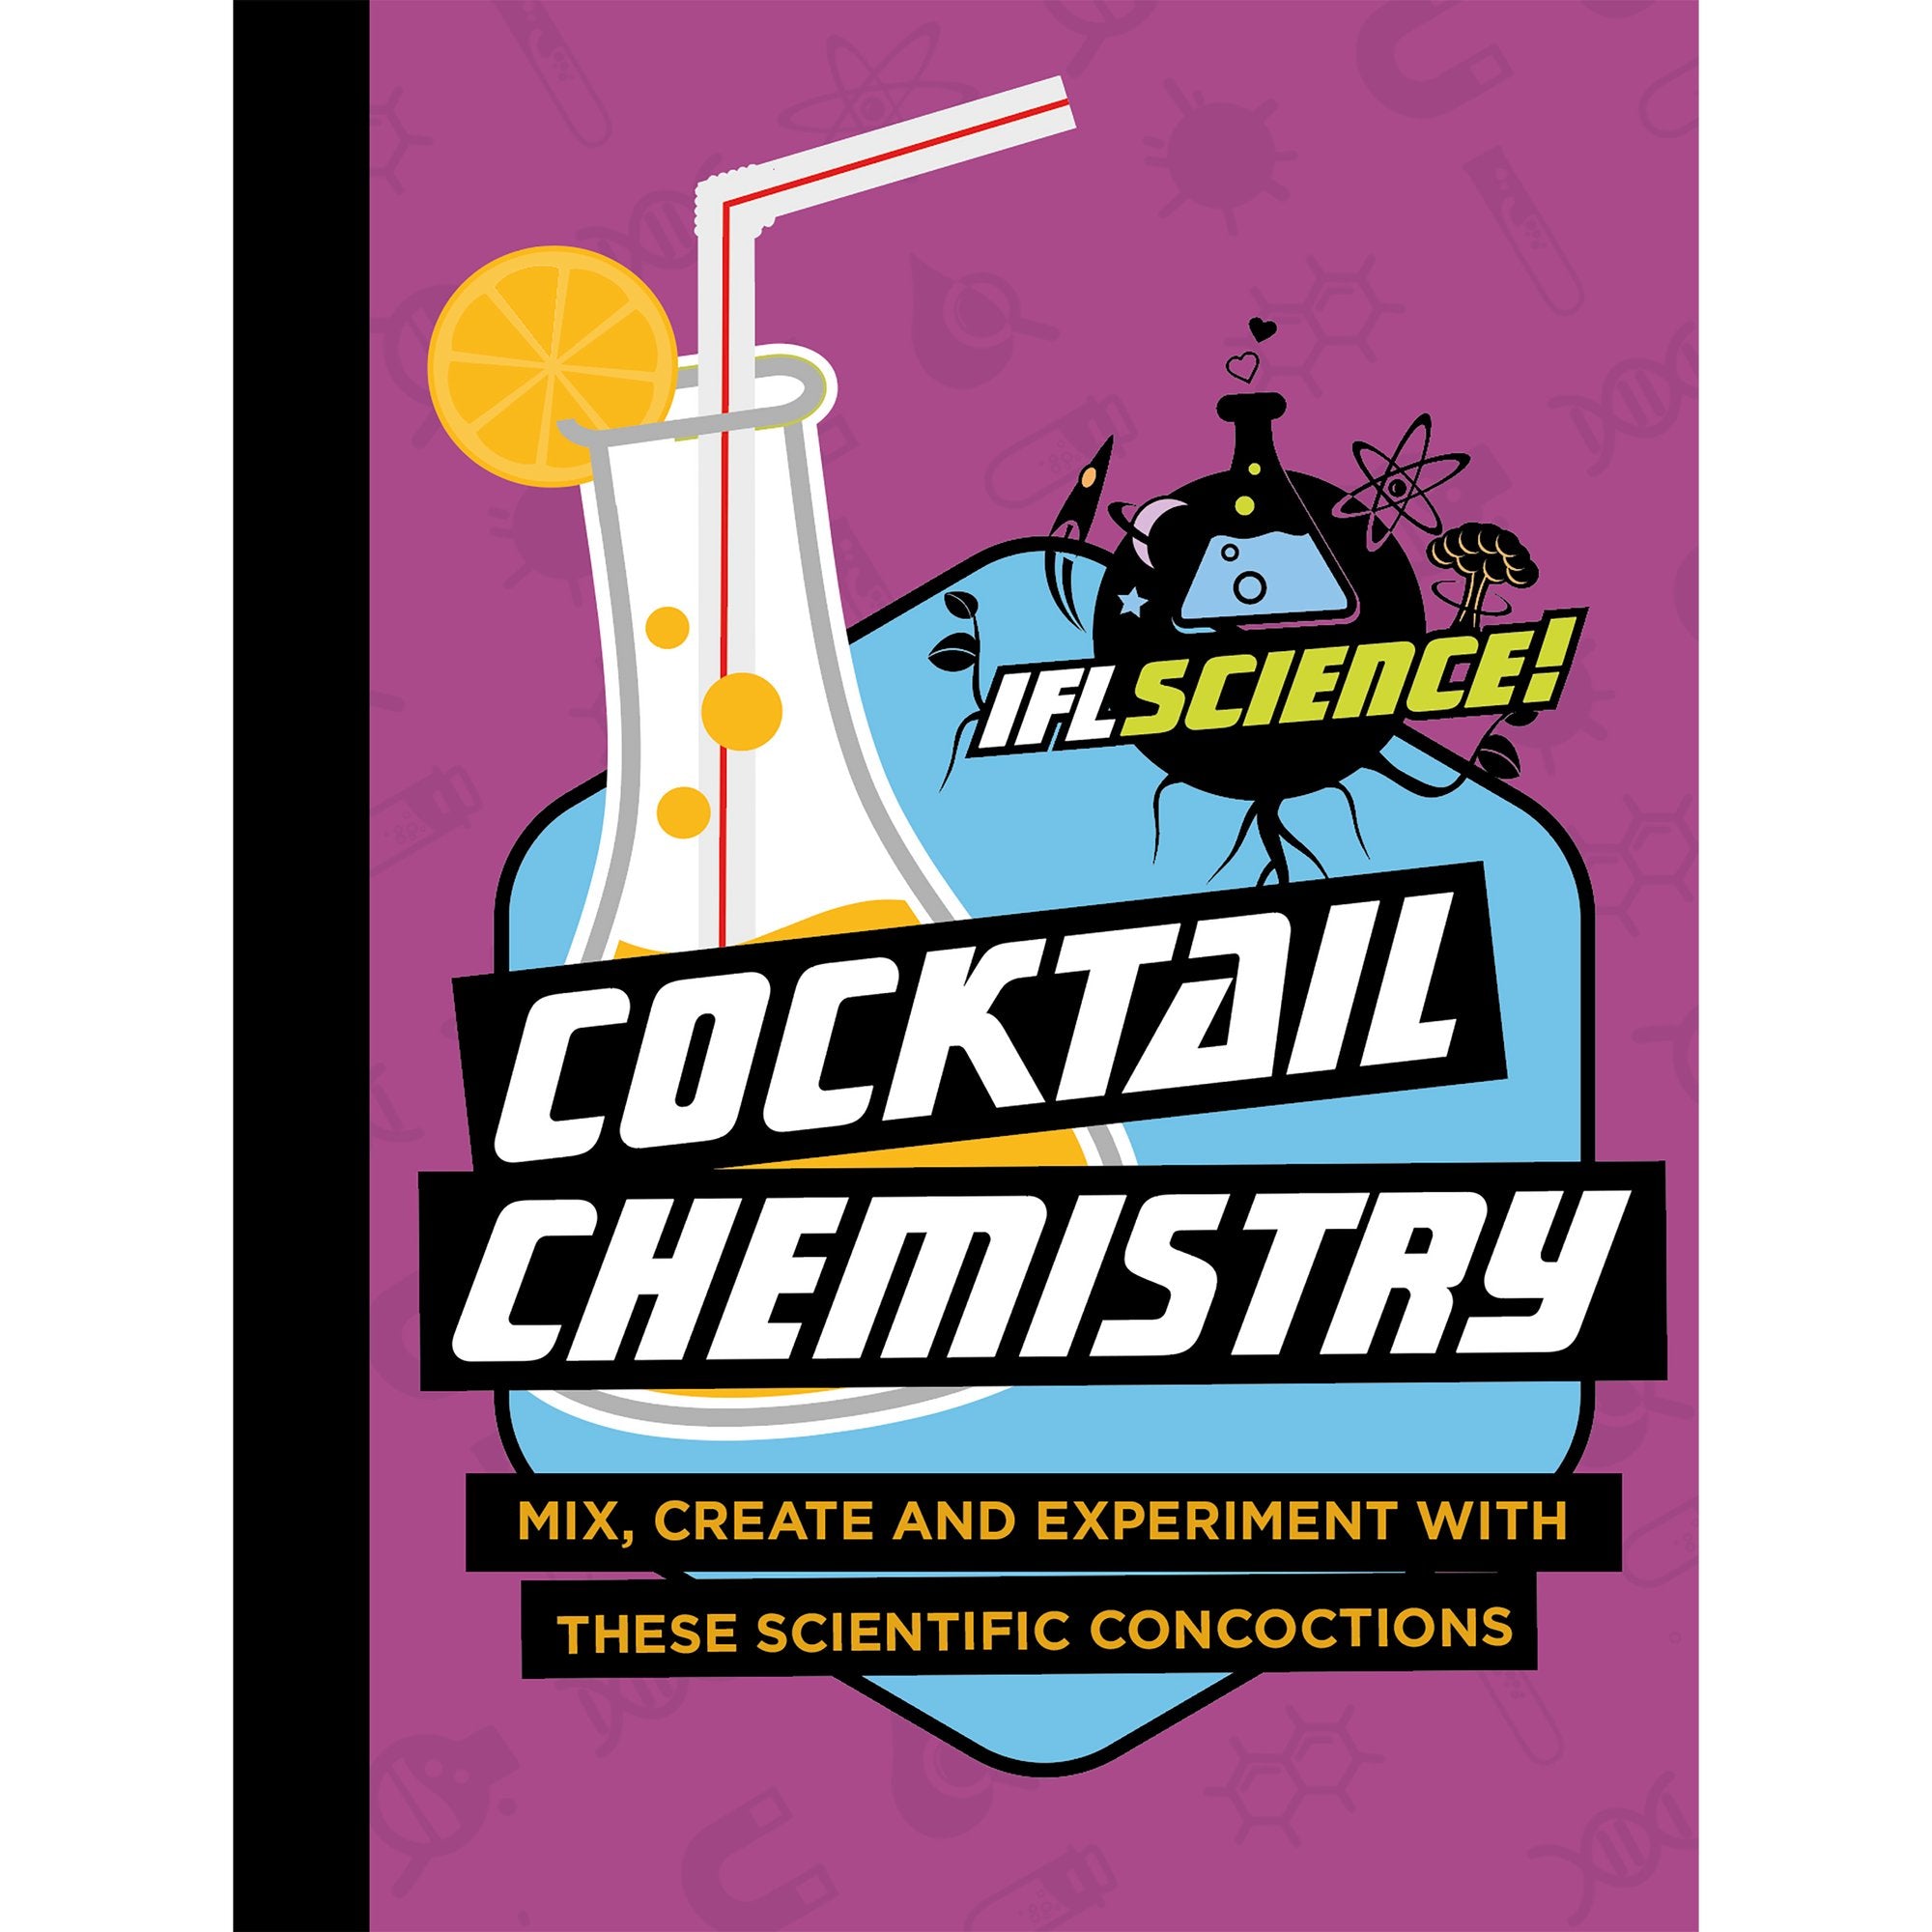 IFLScience: Cocktail Chemistry